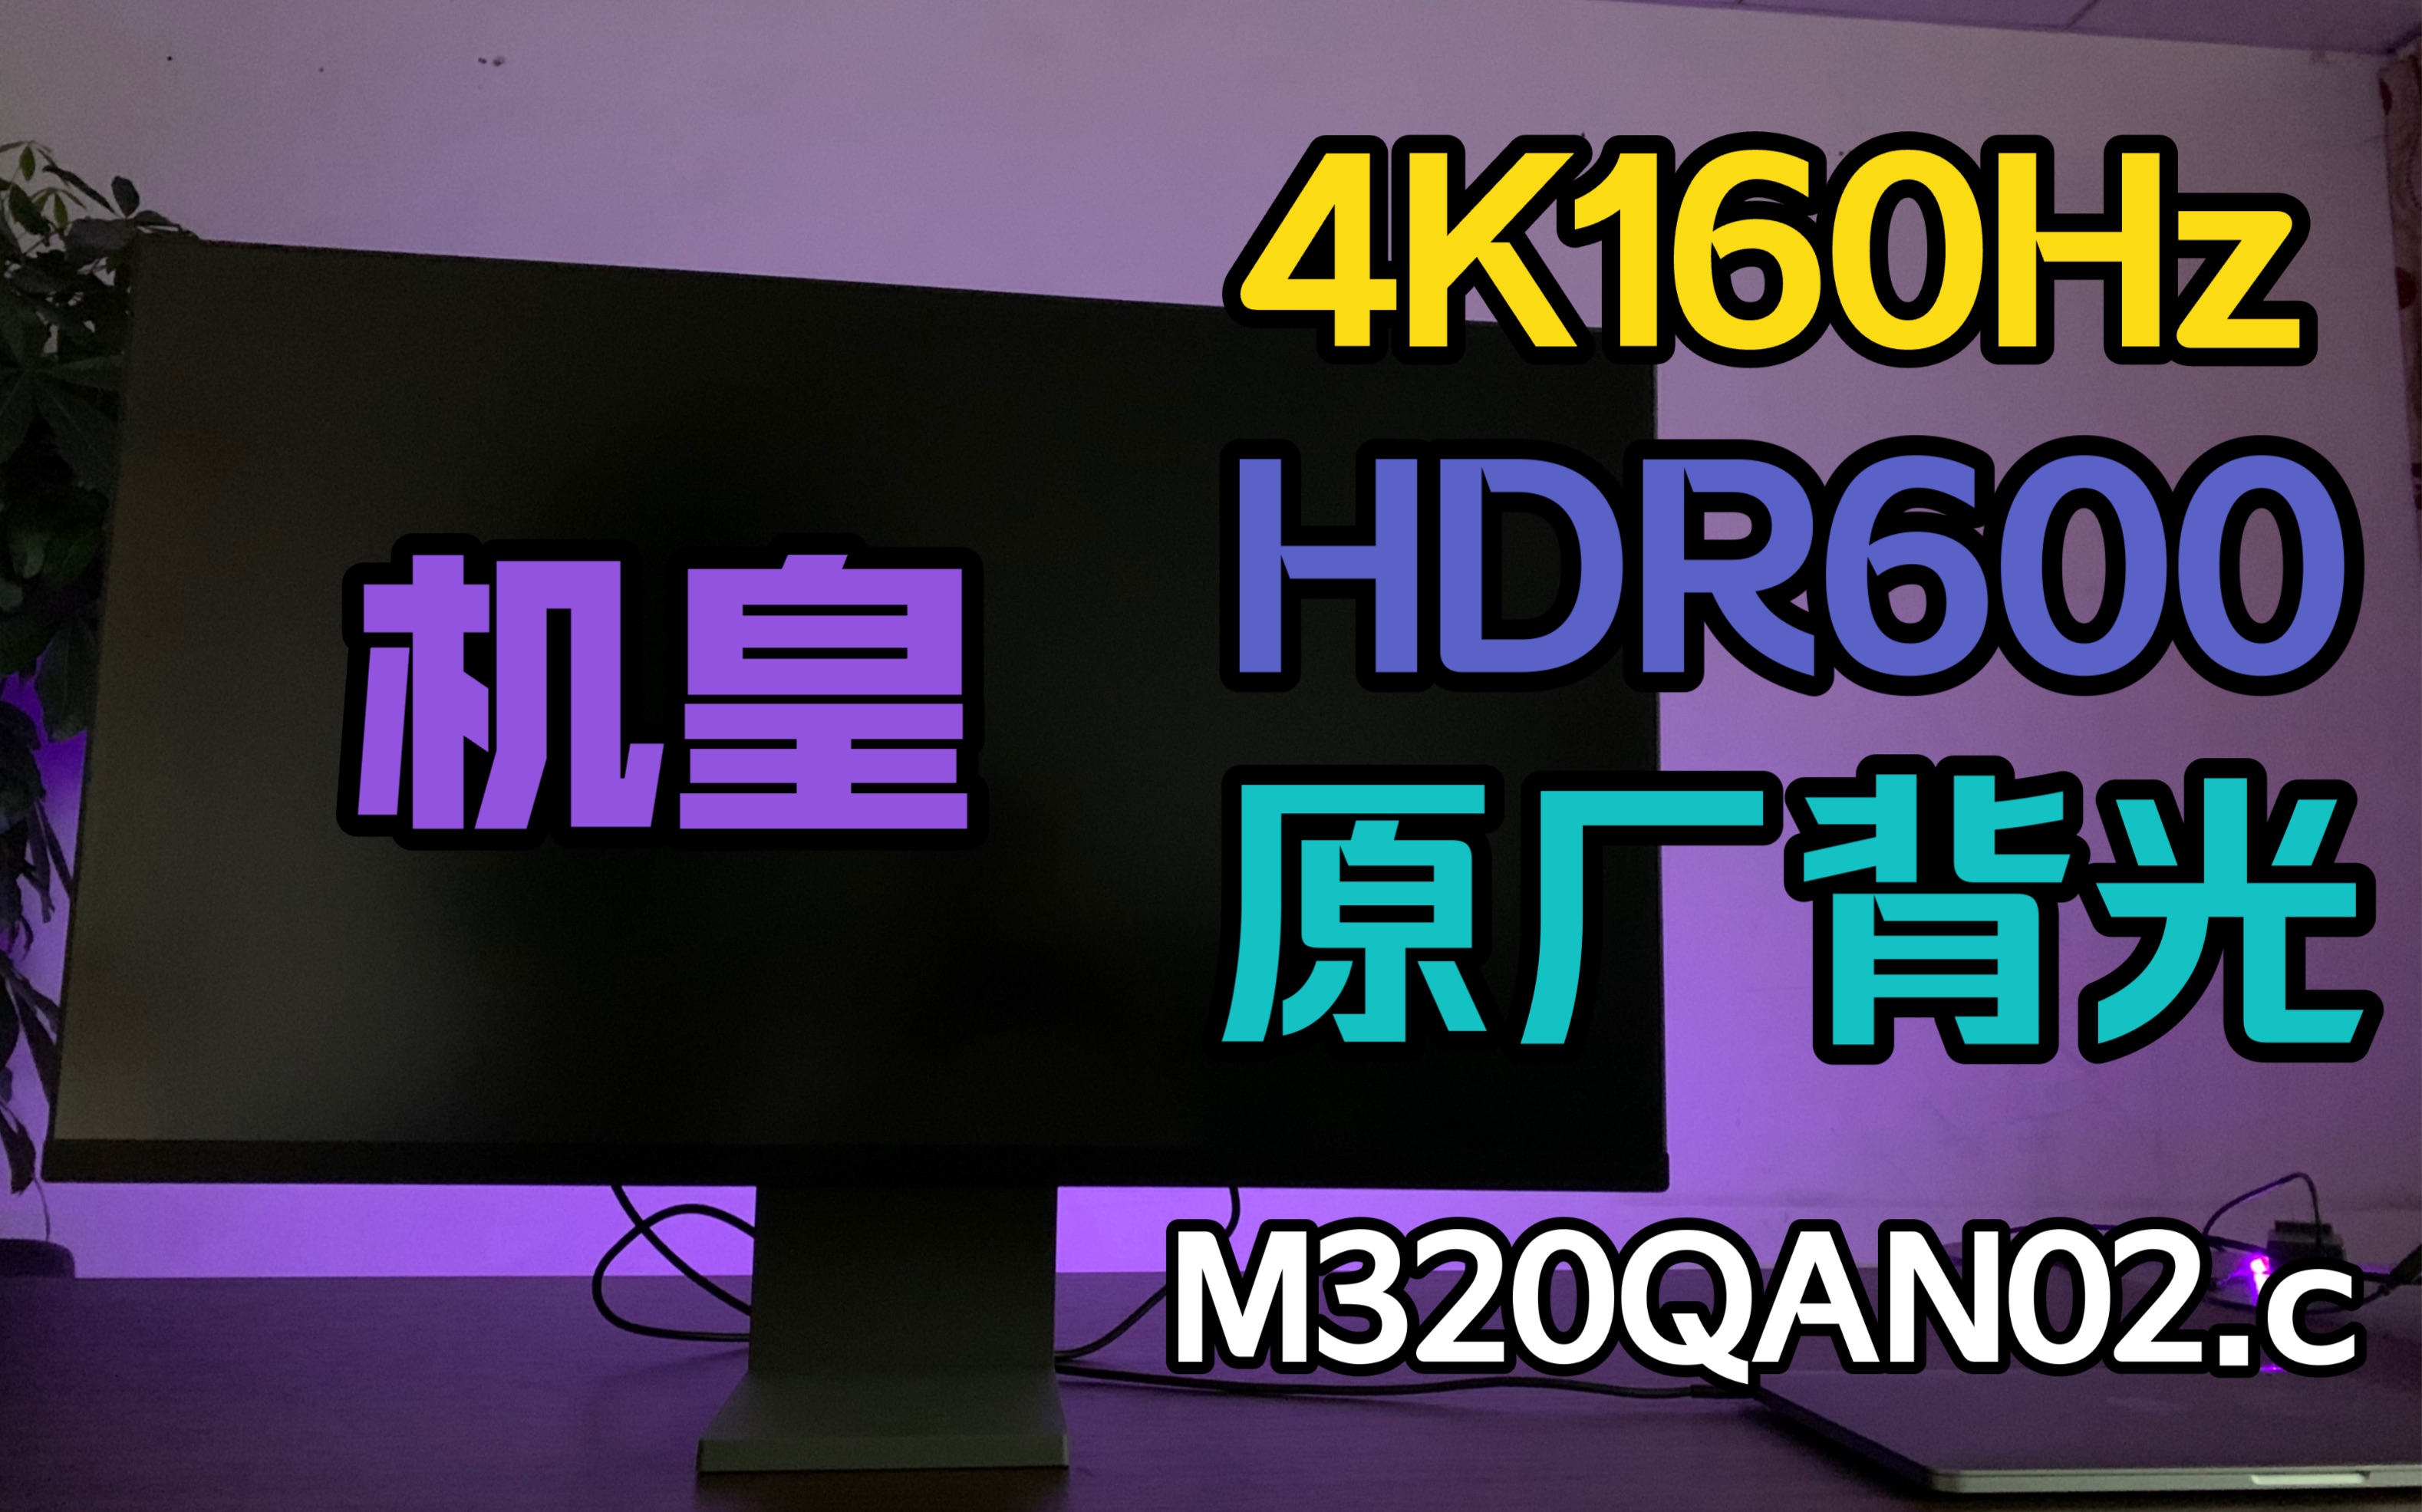 新一代机皇4K 160Hz HDR600顶级面板 电竞显示器XG32QA 让你开局就王炸 M320QAN02.c原厂背光